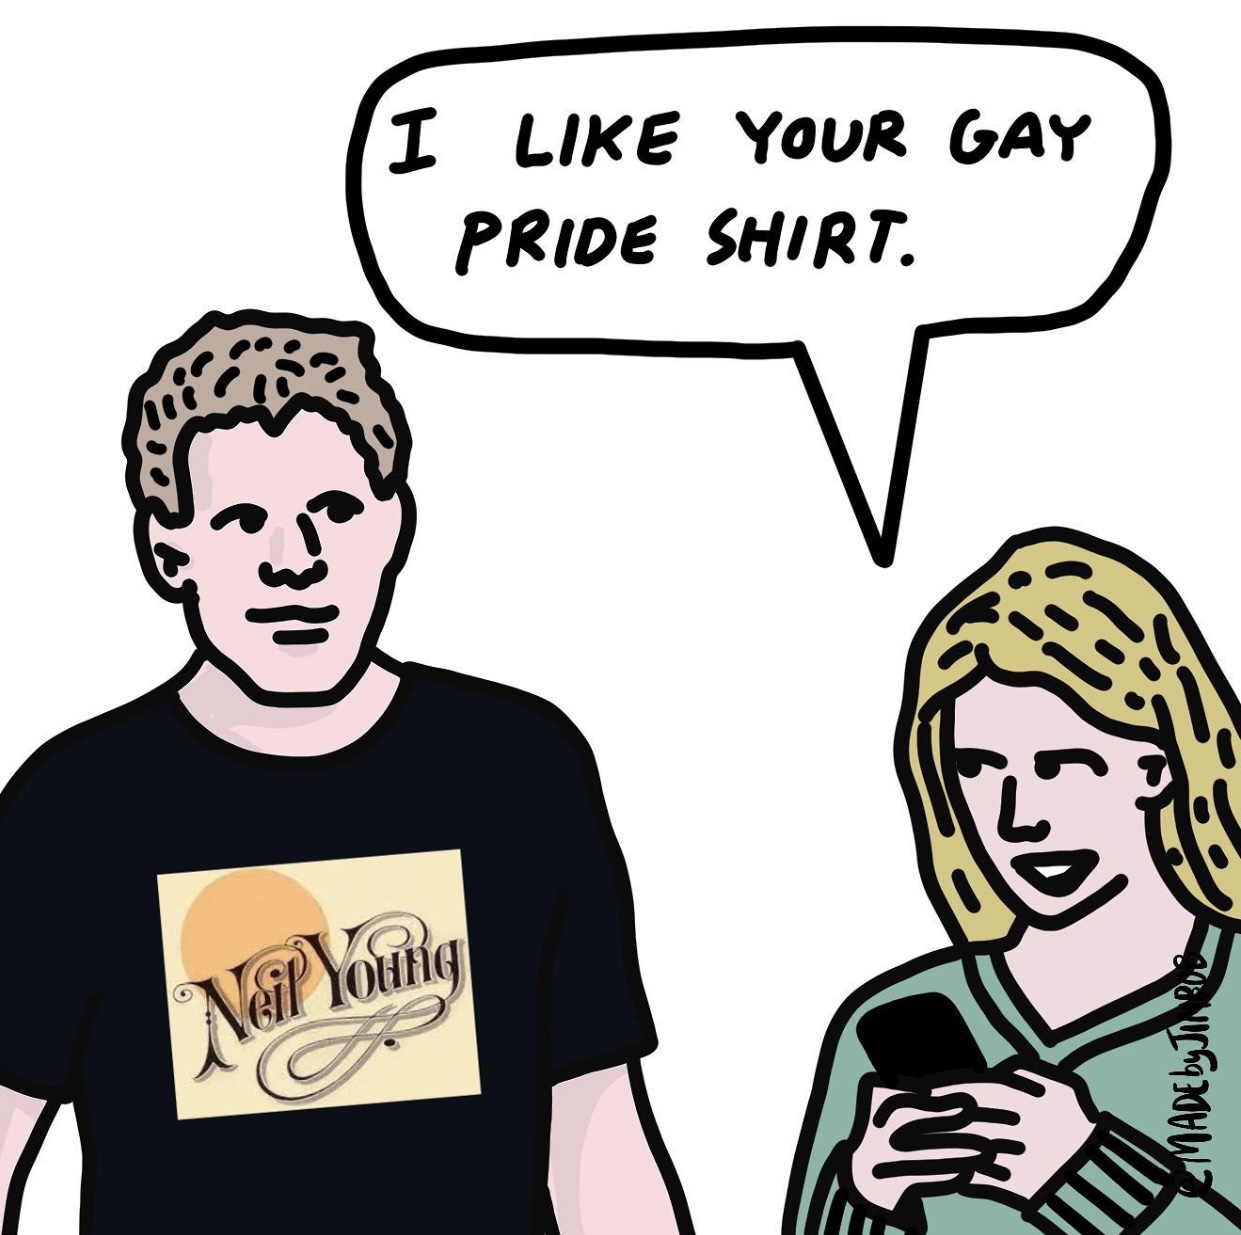 I like your gay pride shirt - TheDonald.